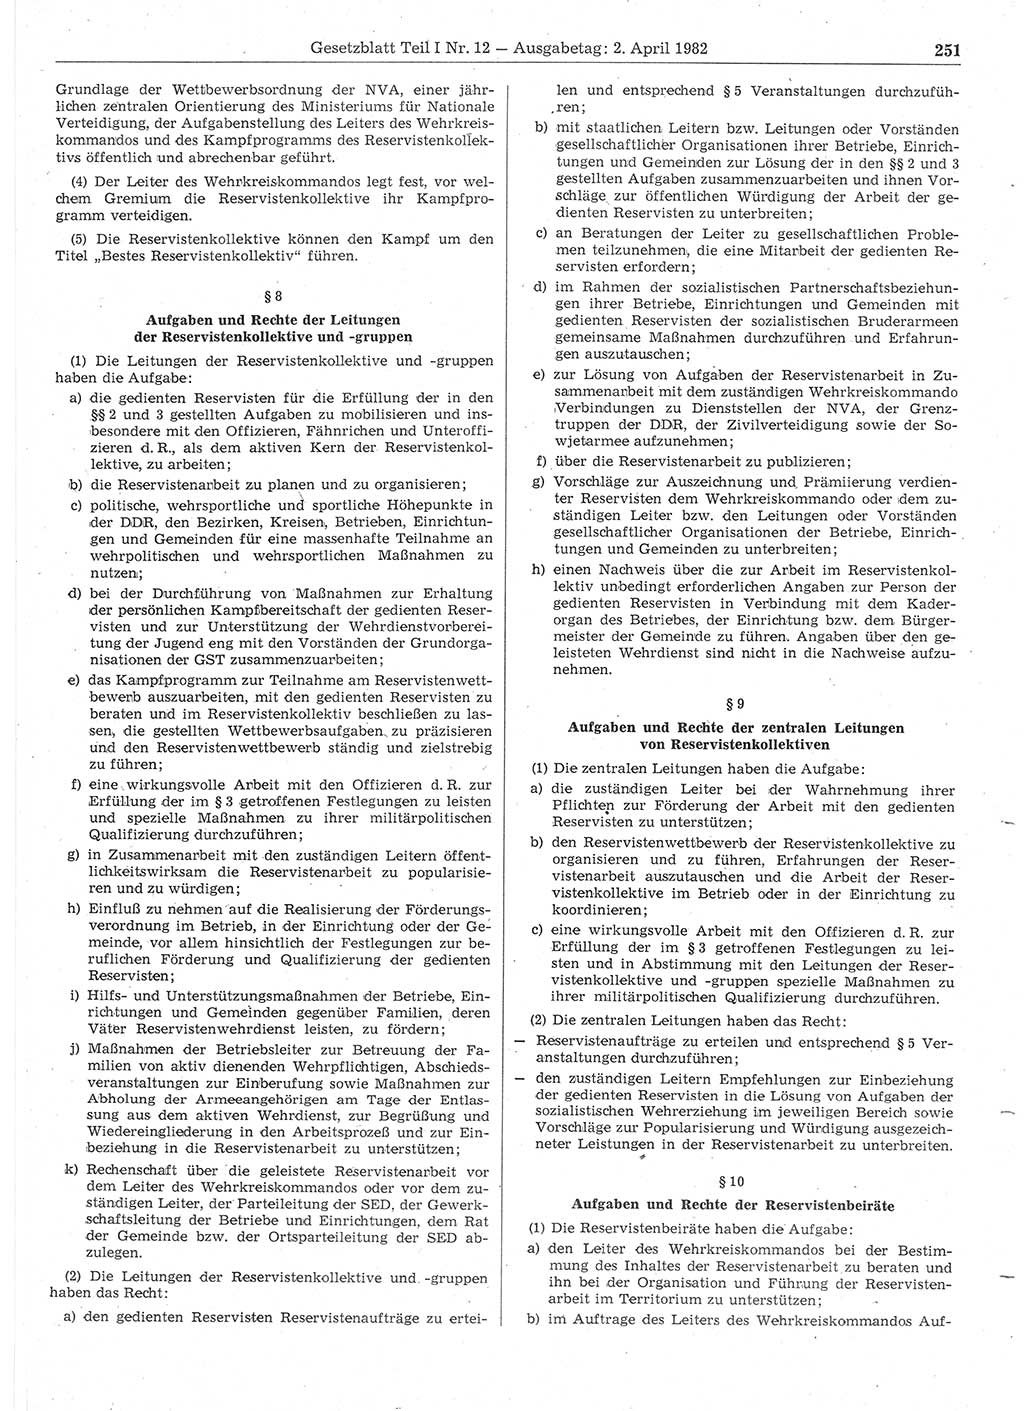 Gesetzblatt (GBl.) der Deutschen Demokratischen Republik (DDR) Teil Ⅰ 1982, Seite 251 (GBl. DDR Ⅰ 1982, S. 251)